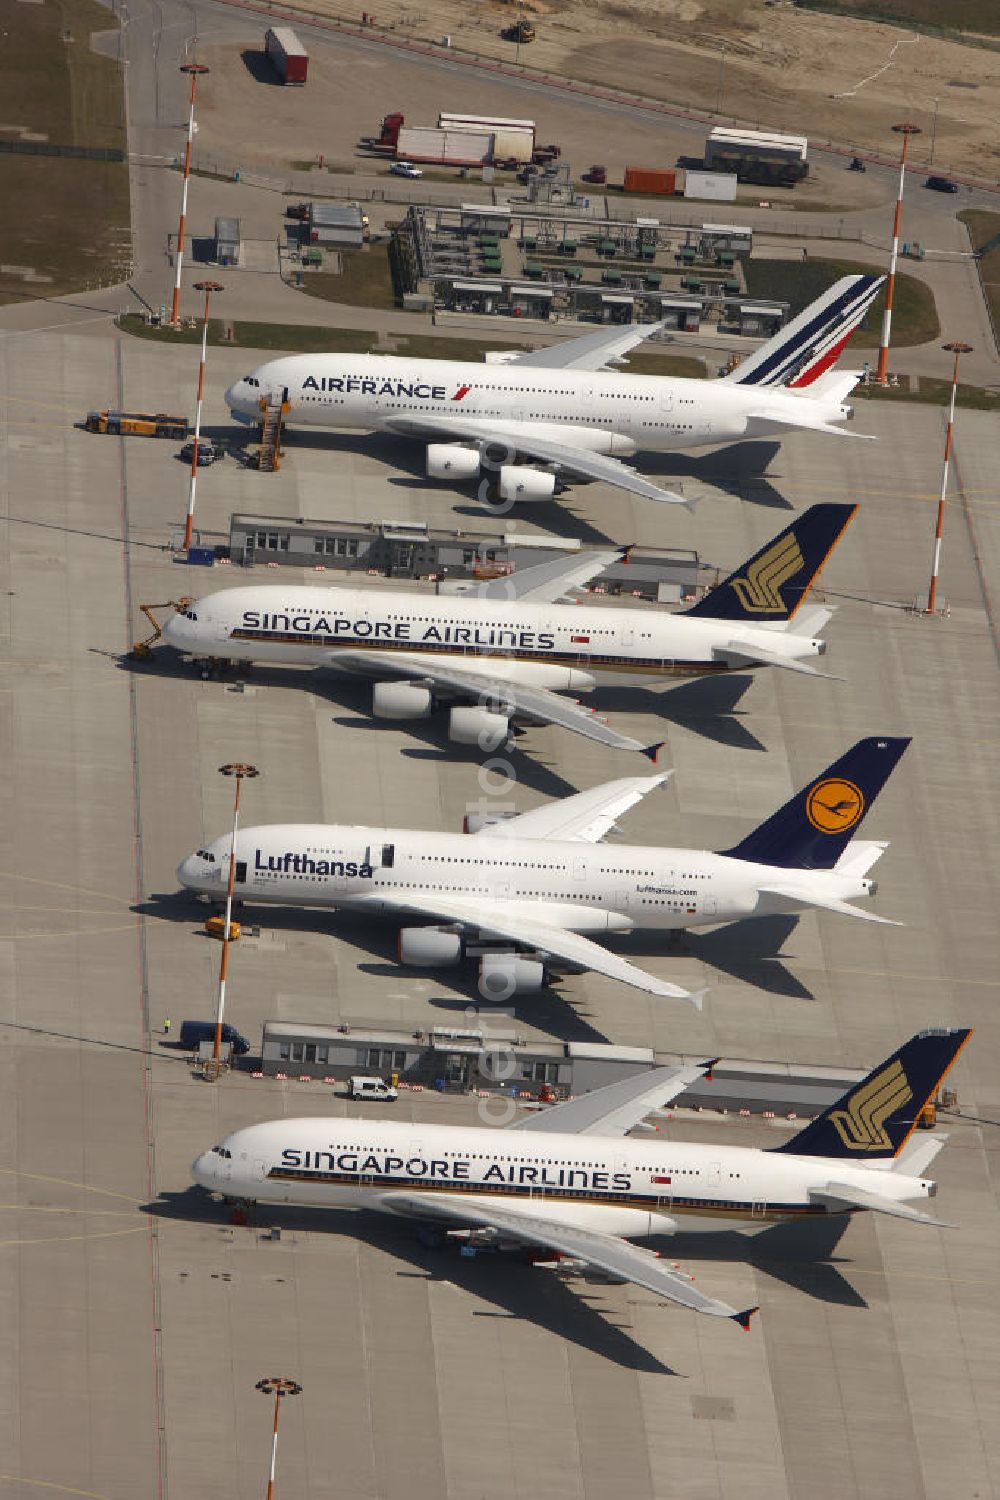 Aerial image Hamburg Finkenwerder - Blick auf fertige, zur Auslieferung an die bestellenden Airlines bereitstehende Passagierflugzeuge A380 auf dem Flugplatz Hamburg-Finkenwerder. Weltweit wird das Luftfahrzeug von renommierten Fluggesellschaften wie LUFTHANSA , AIR FRANCE und Singapore Airlines geflogen.